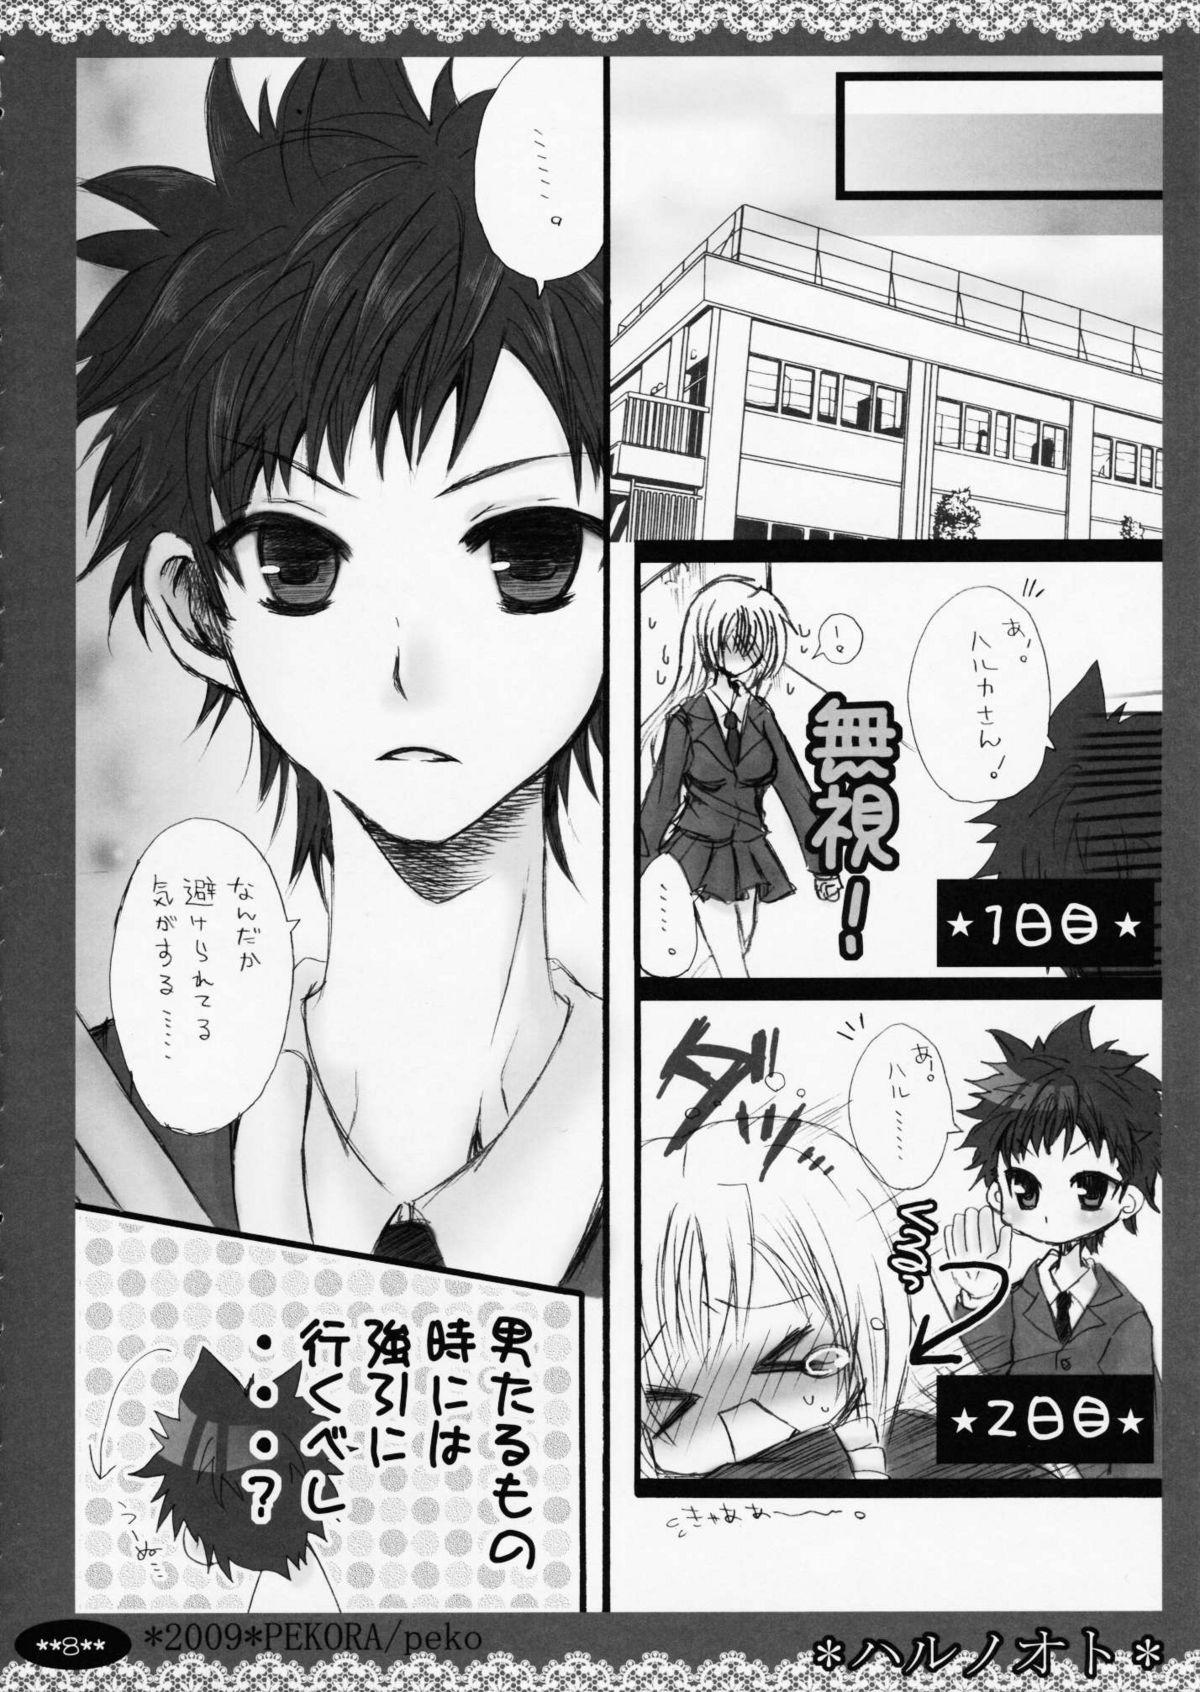 Flaca Haru no Oto - Minami-ke Nylons - Page 8